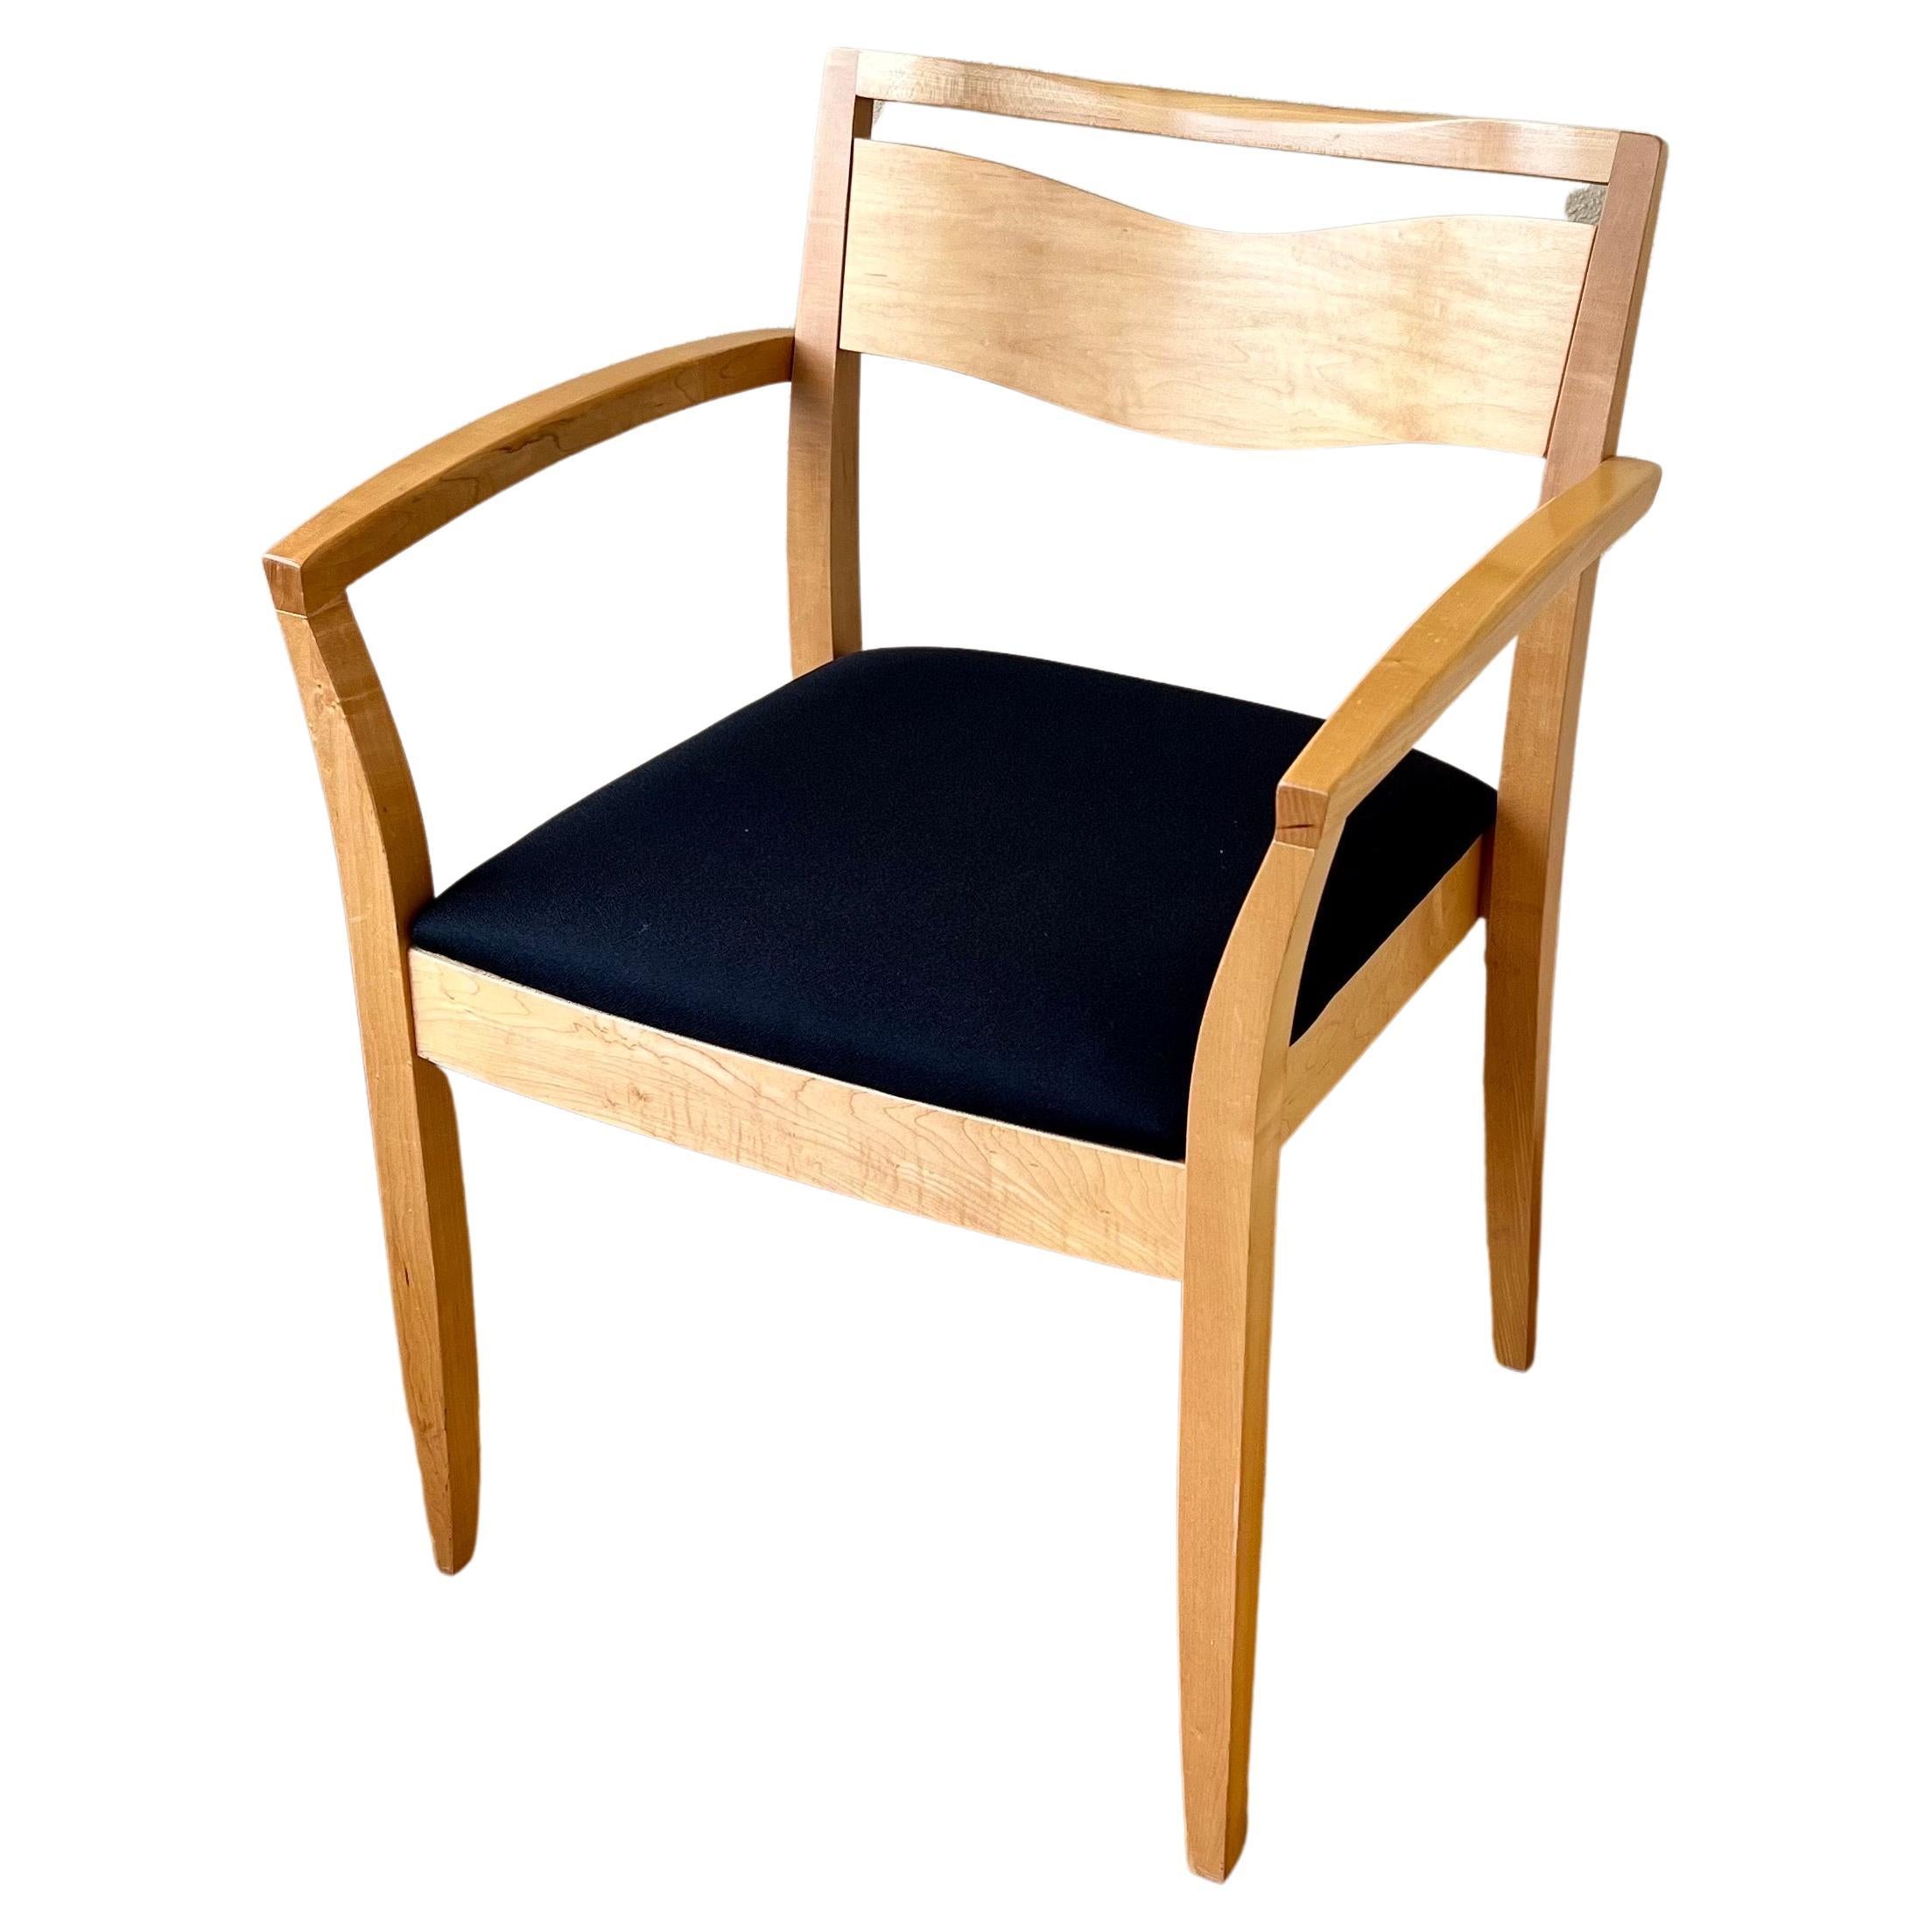 Schöne einzelne Sessel von Knoll großen Zustand solide und robust. behält Medaillon mit Signatur und Datum.